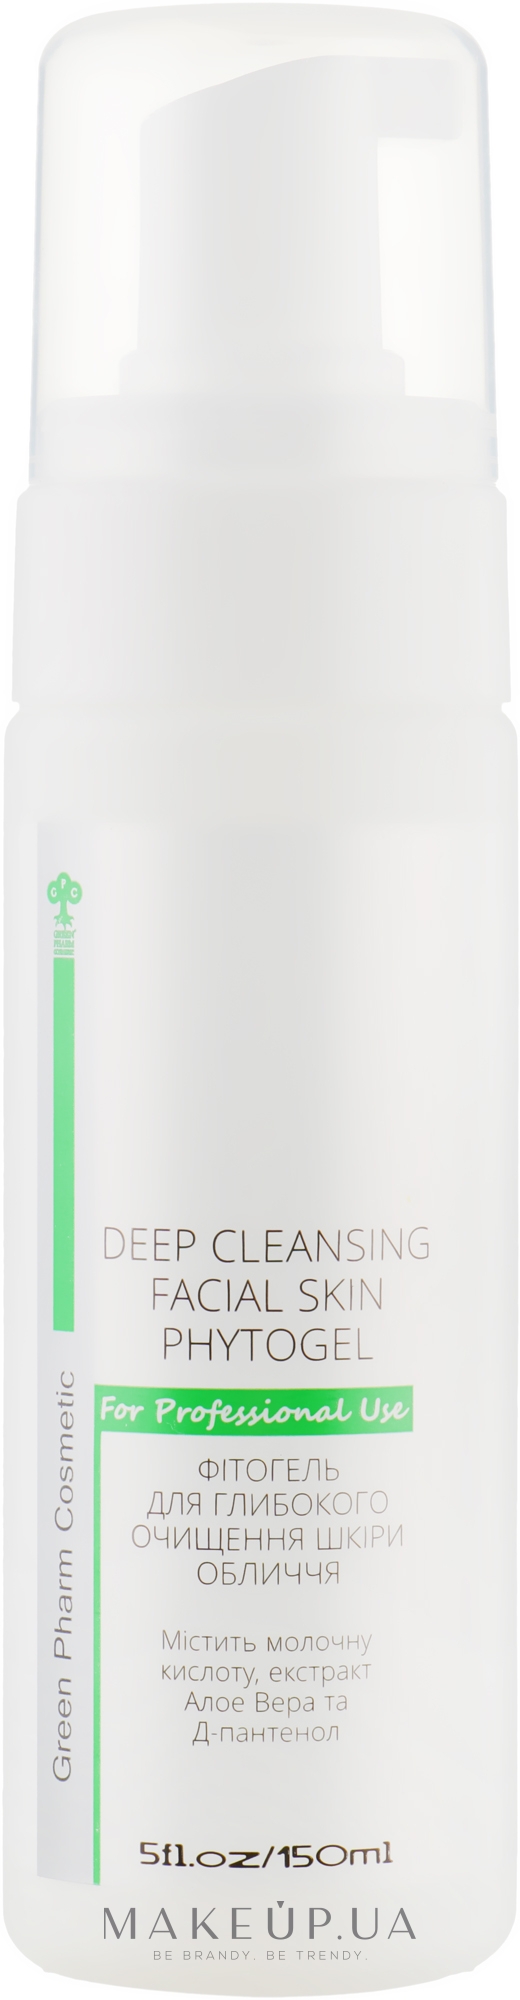 Фитогель для глубокой очистки кожи лица - Green Pharm Cosmetic РН 5,0 — фото 150ml